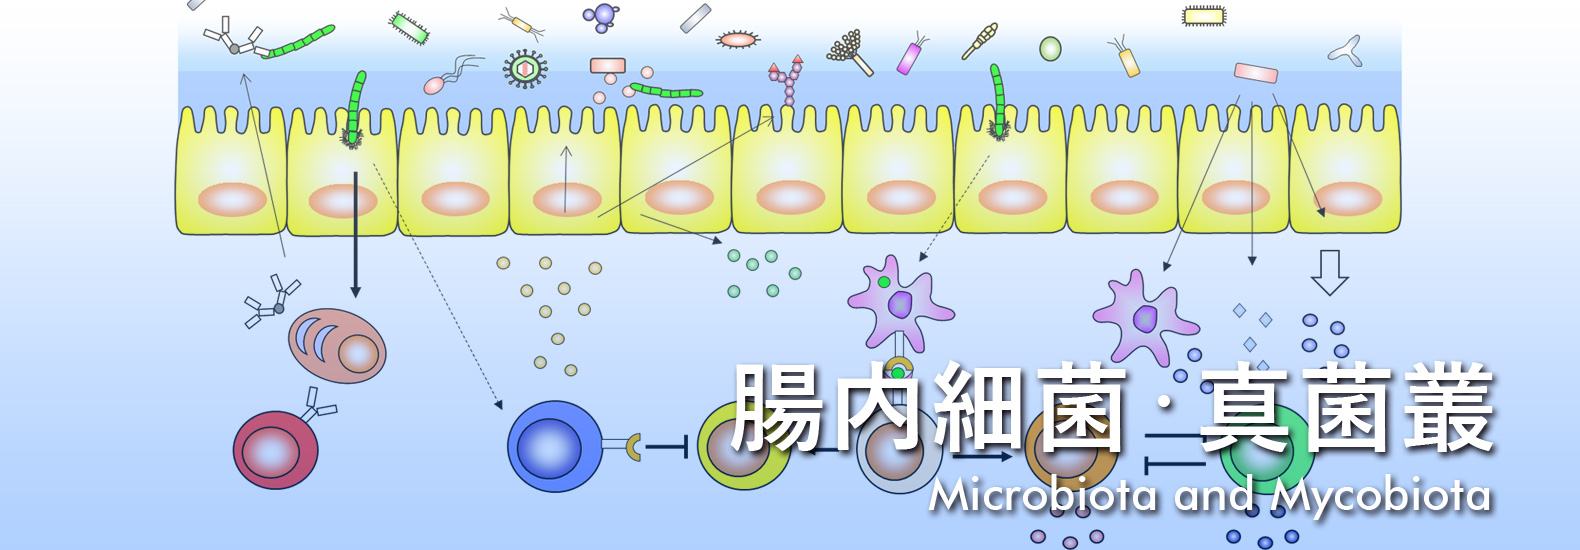 腸内細菌・真菌叢 Microbiota and Mycobiota